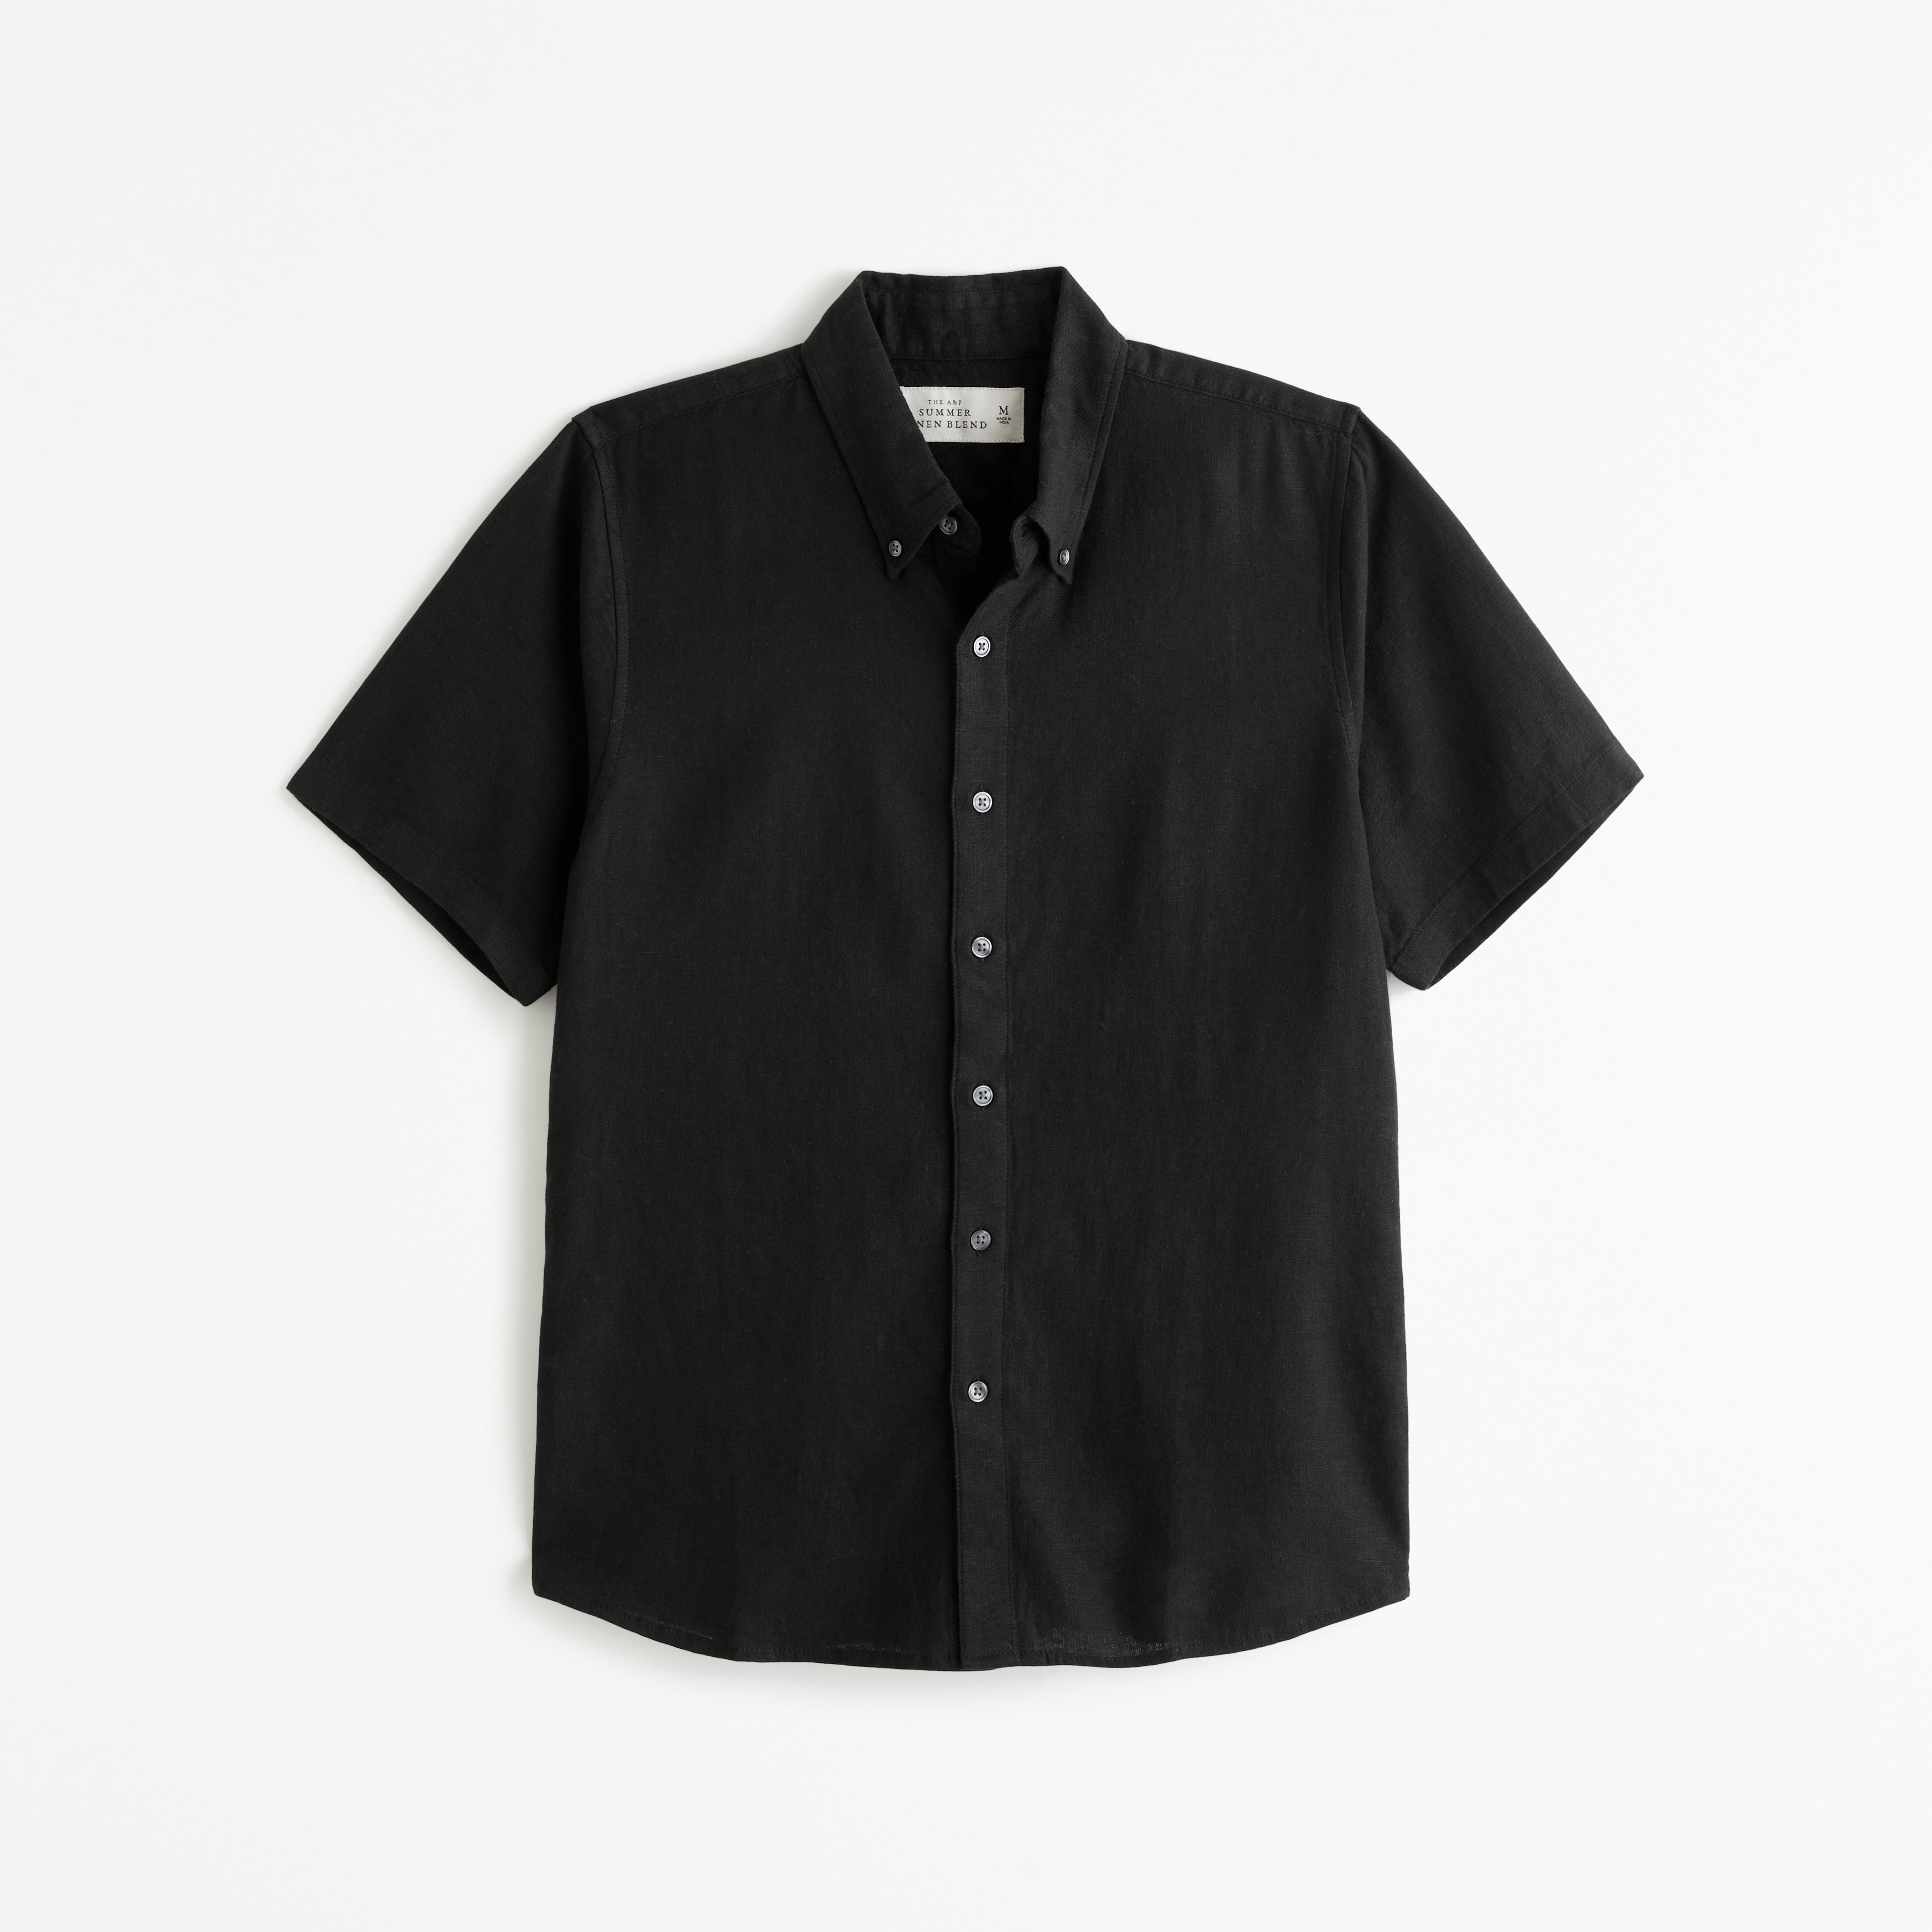 Men's Short-Sleeve Summer Linen-Blend Button-Up Shirt | Men's Tops |  Abercrombie.com